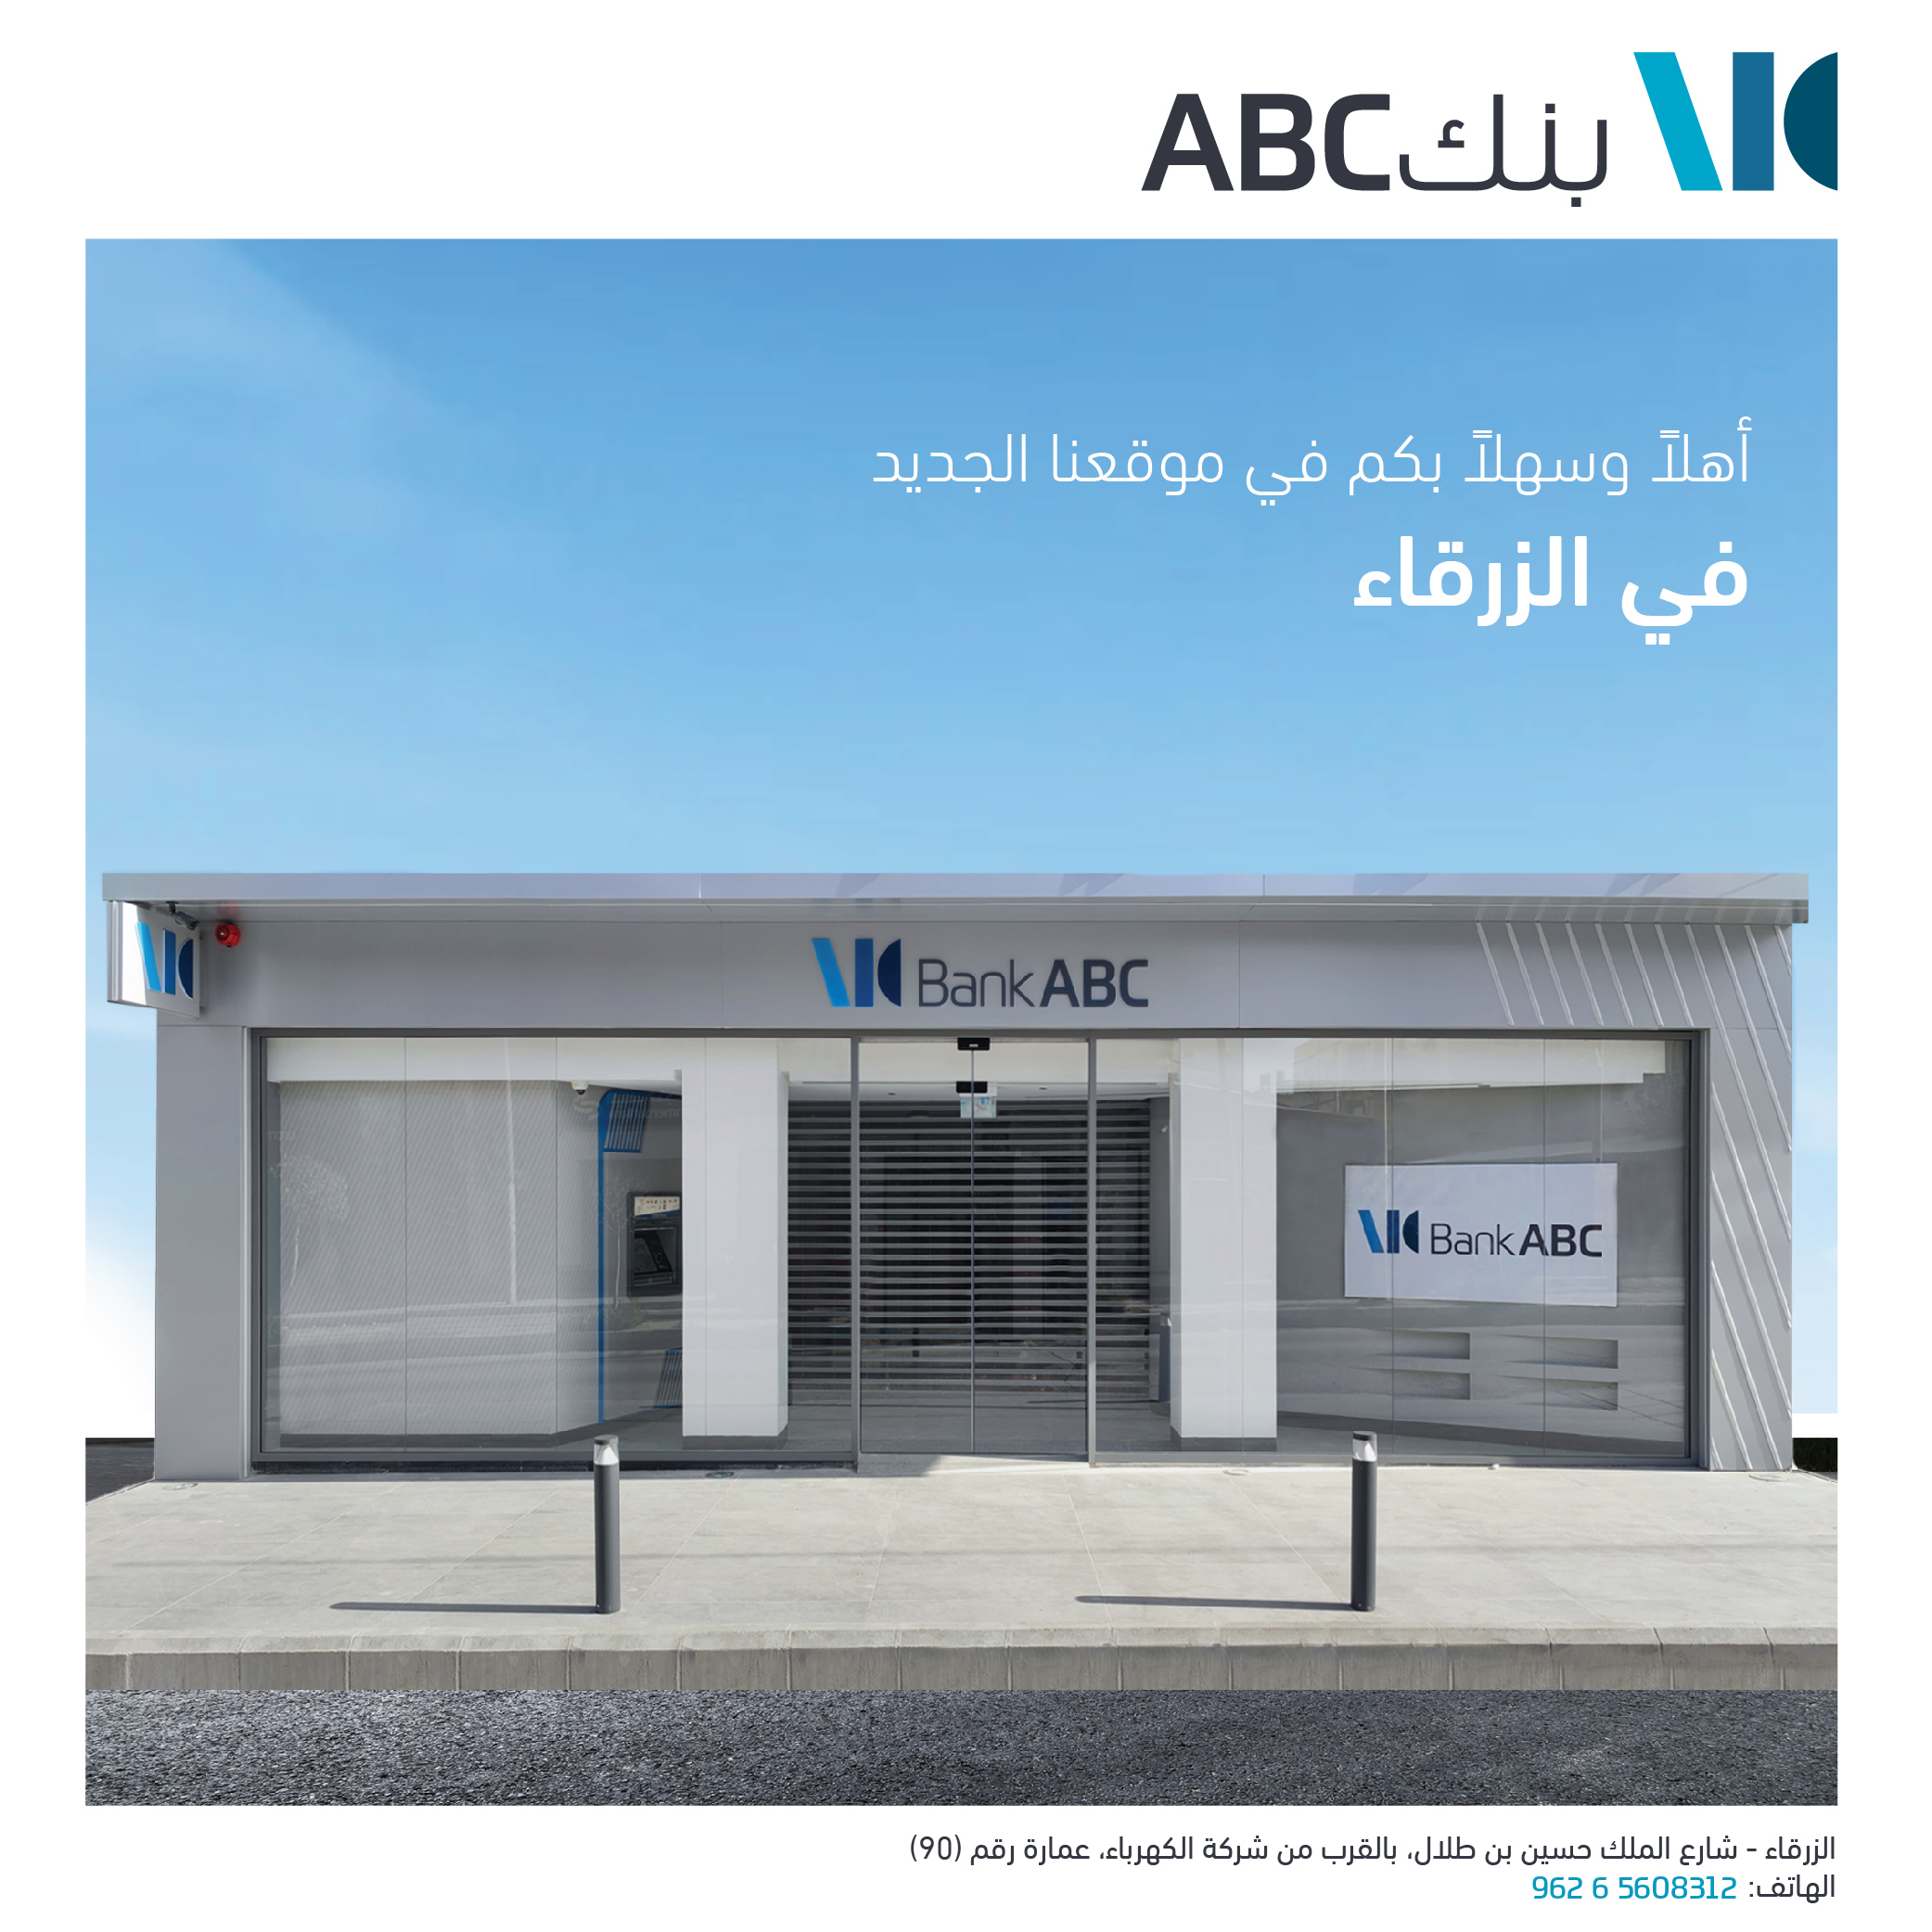 بنك ABC في الأردن يفتتح فرعه الجديد المُحدَّث في الزرقاء 